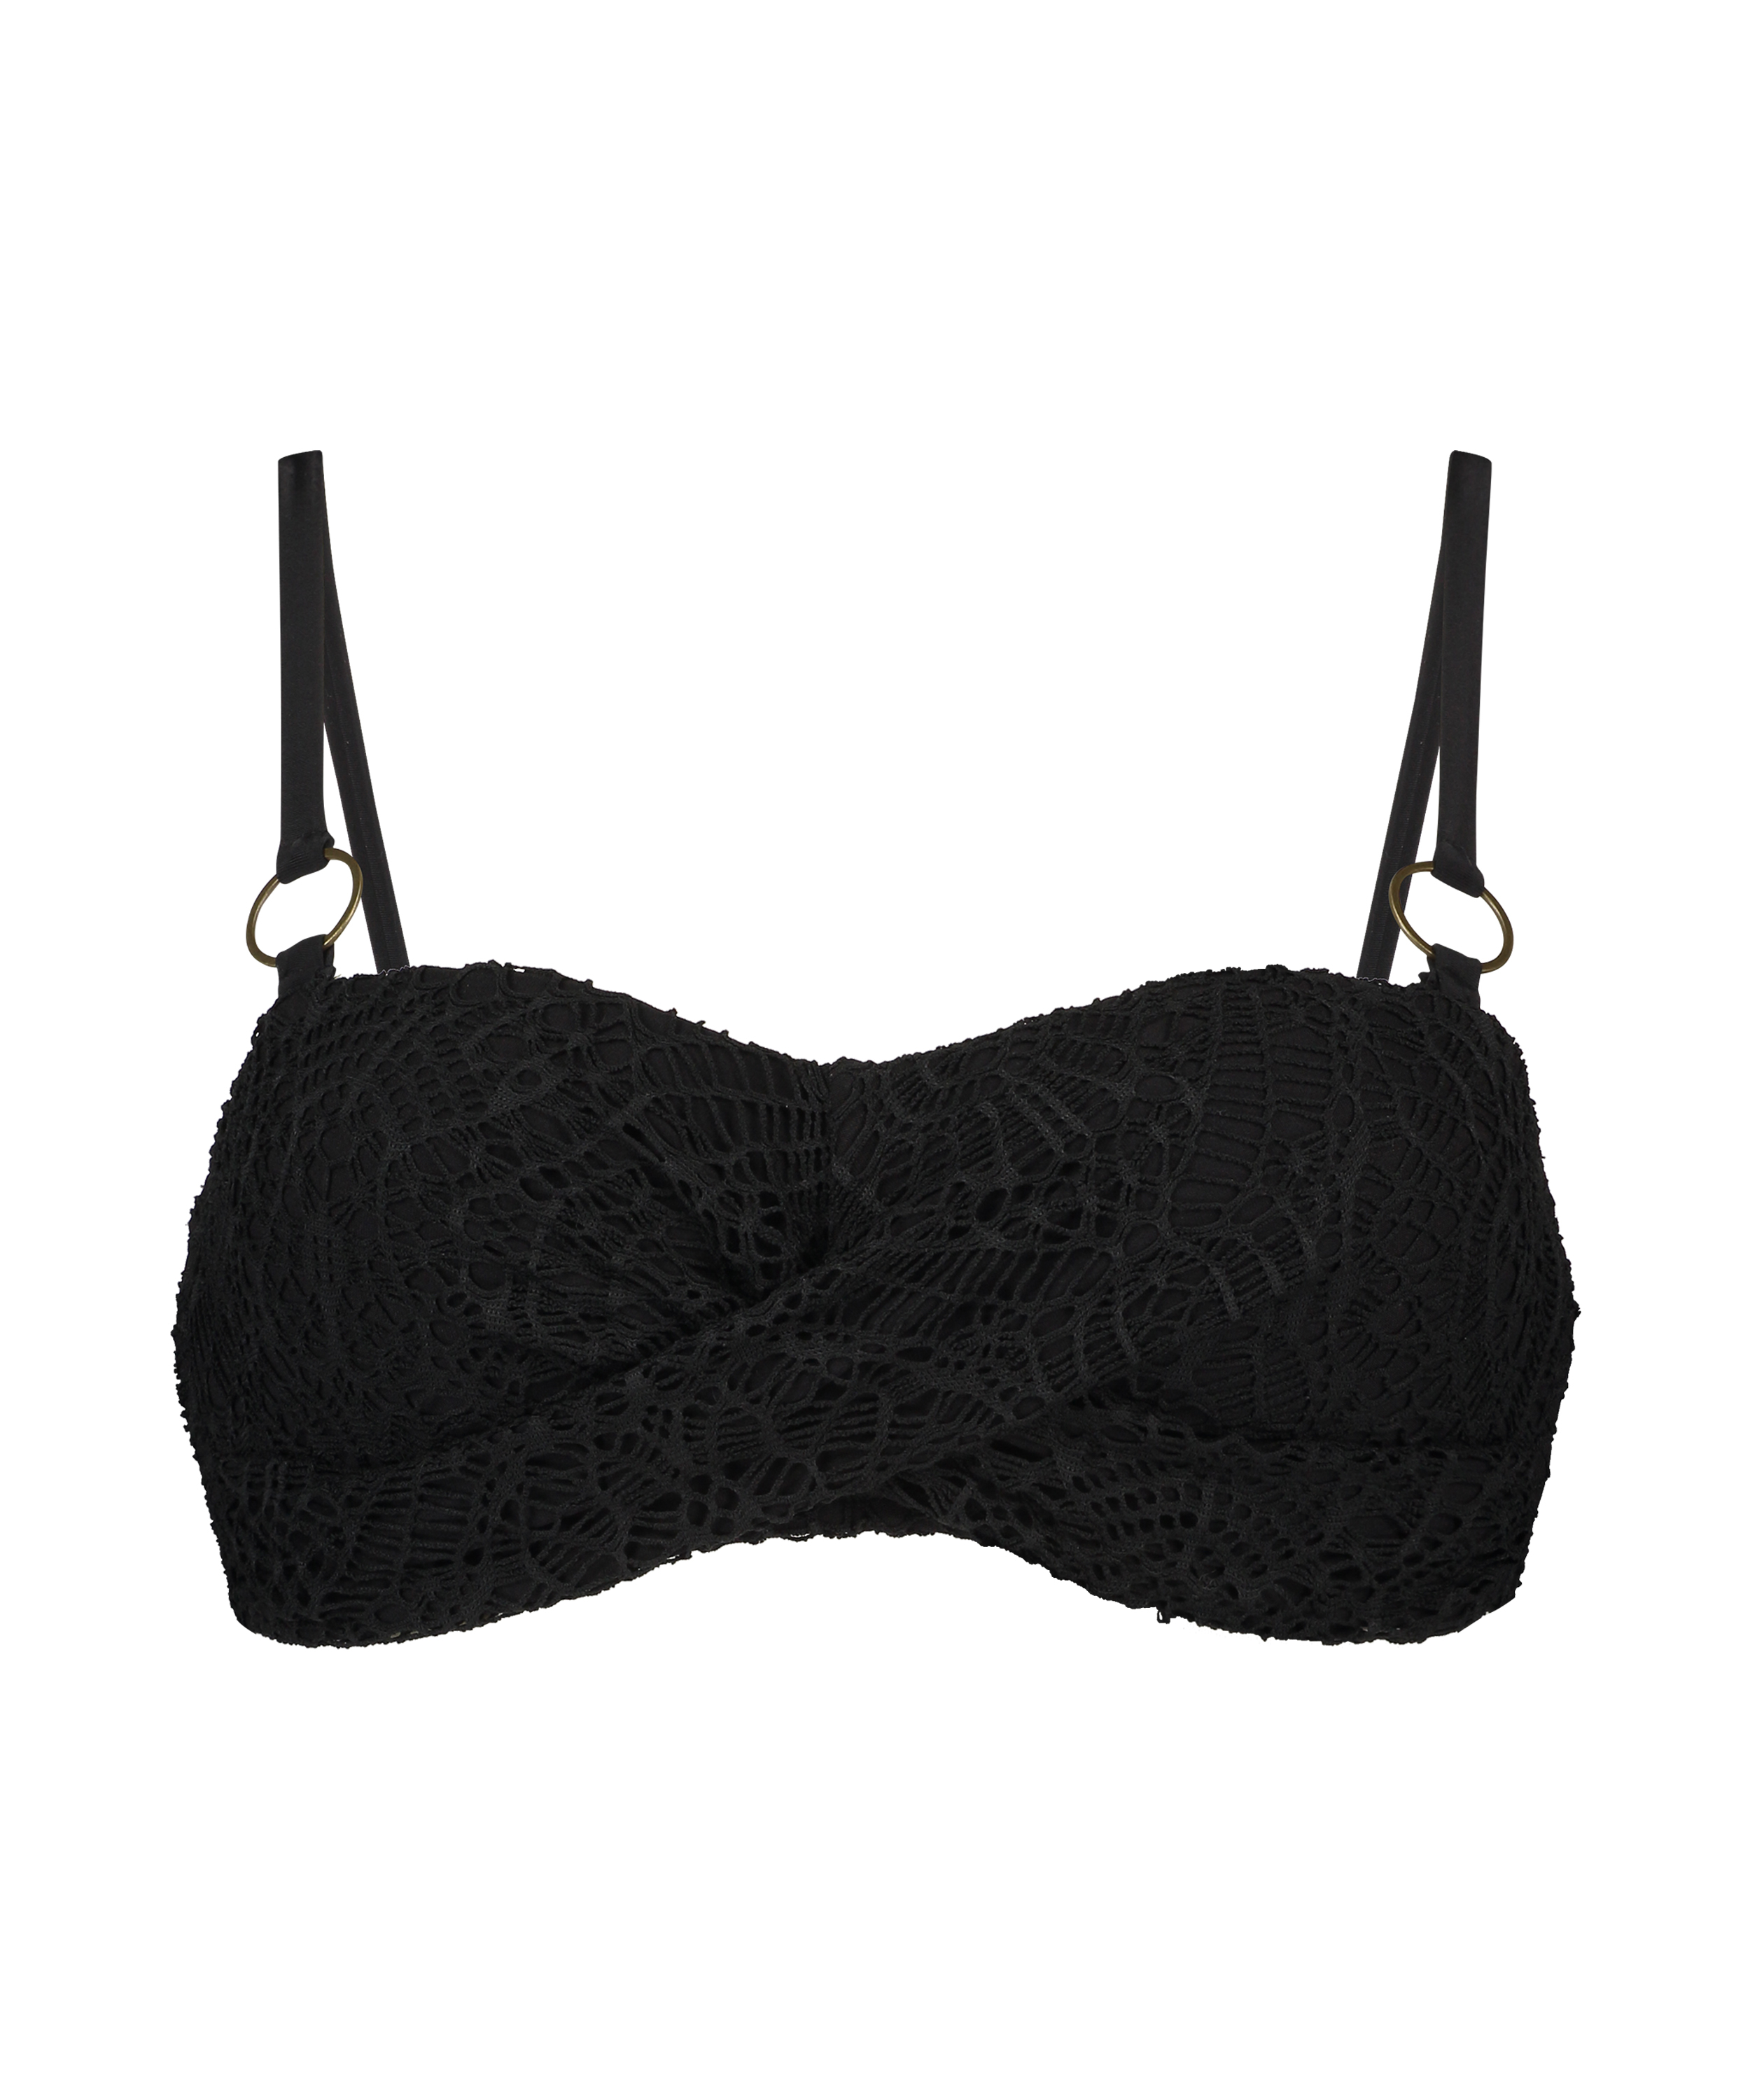 Vorgeformtes Bandeau-Bikini-Top Crochet, Schwarz, main